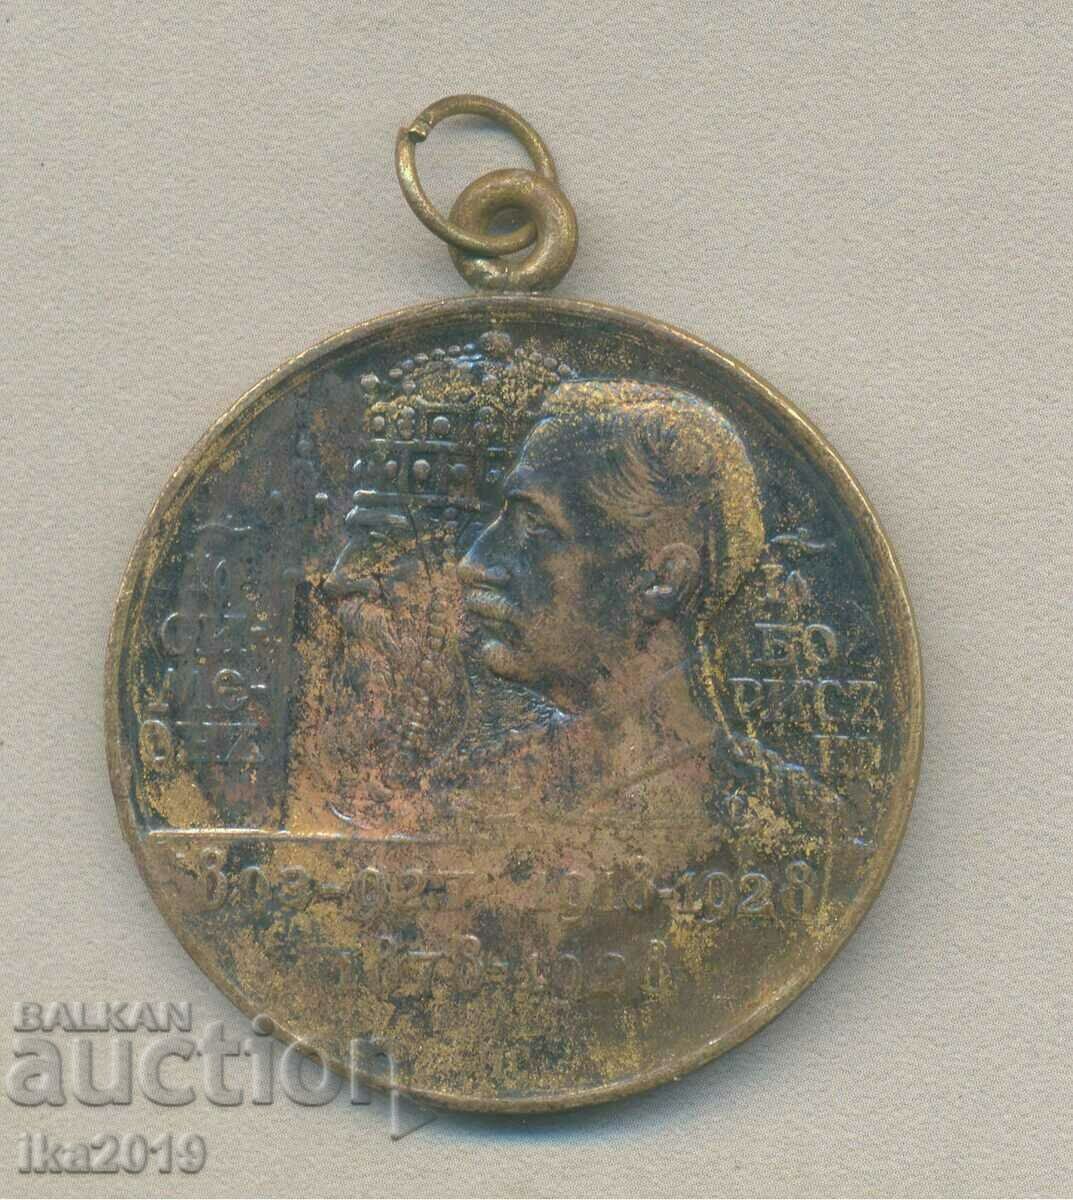 Σπάνιο μετάλλιο Τσάρου Boris 1-Boris 3 μεγάλης διαμέτρου 40mm.